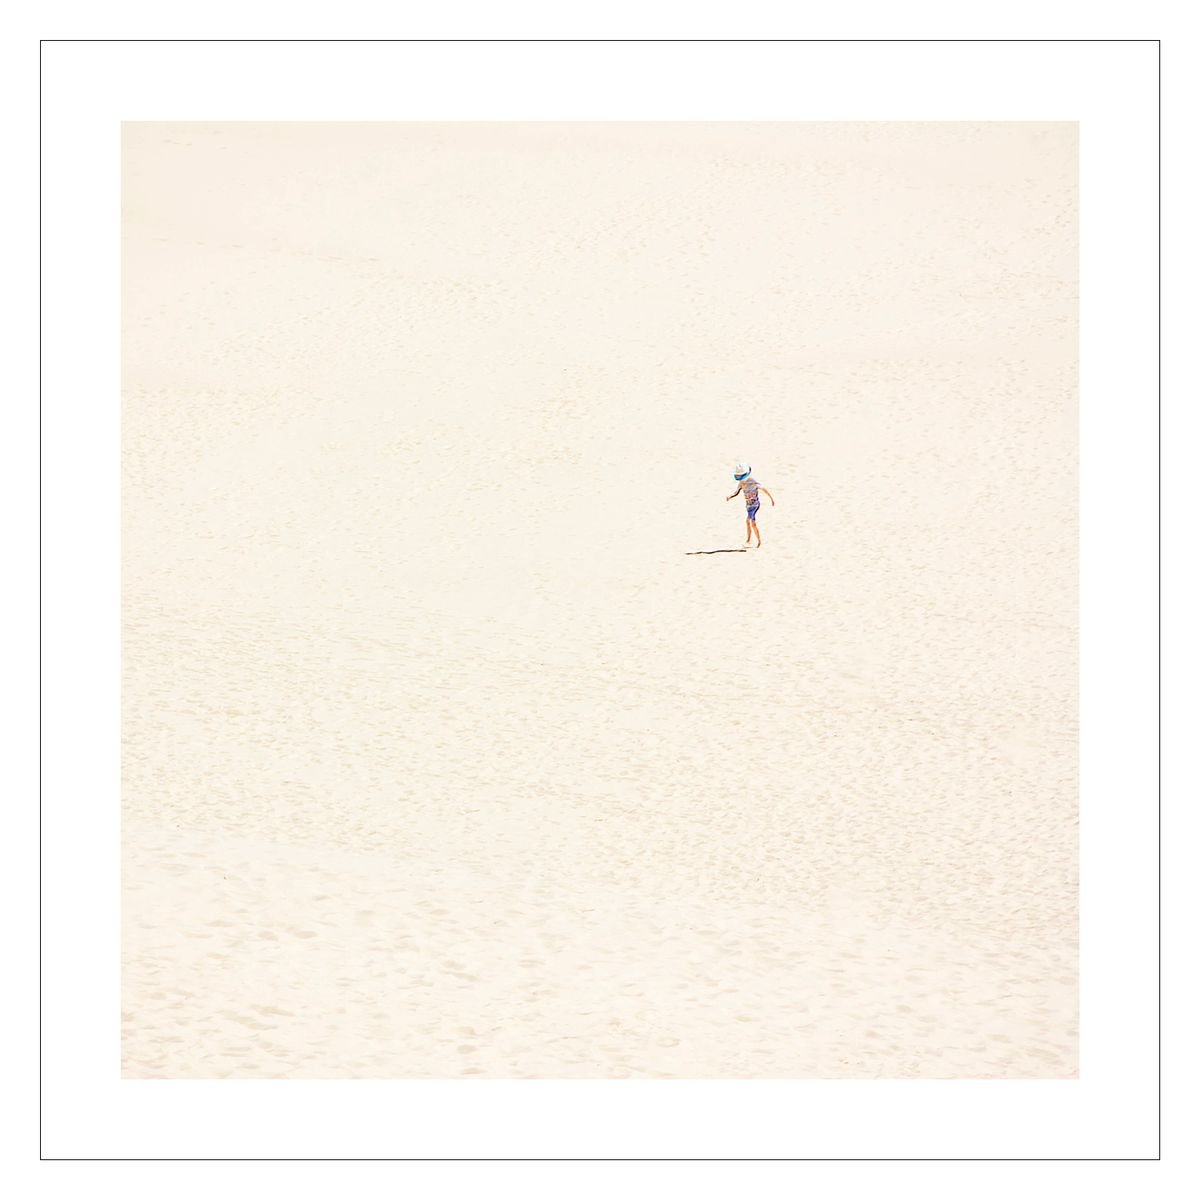 Dune 3 by Beata Podwysocka